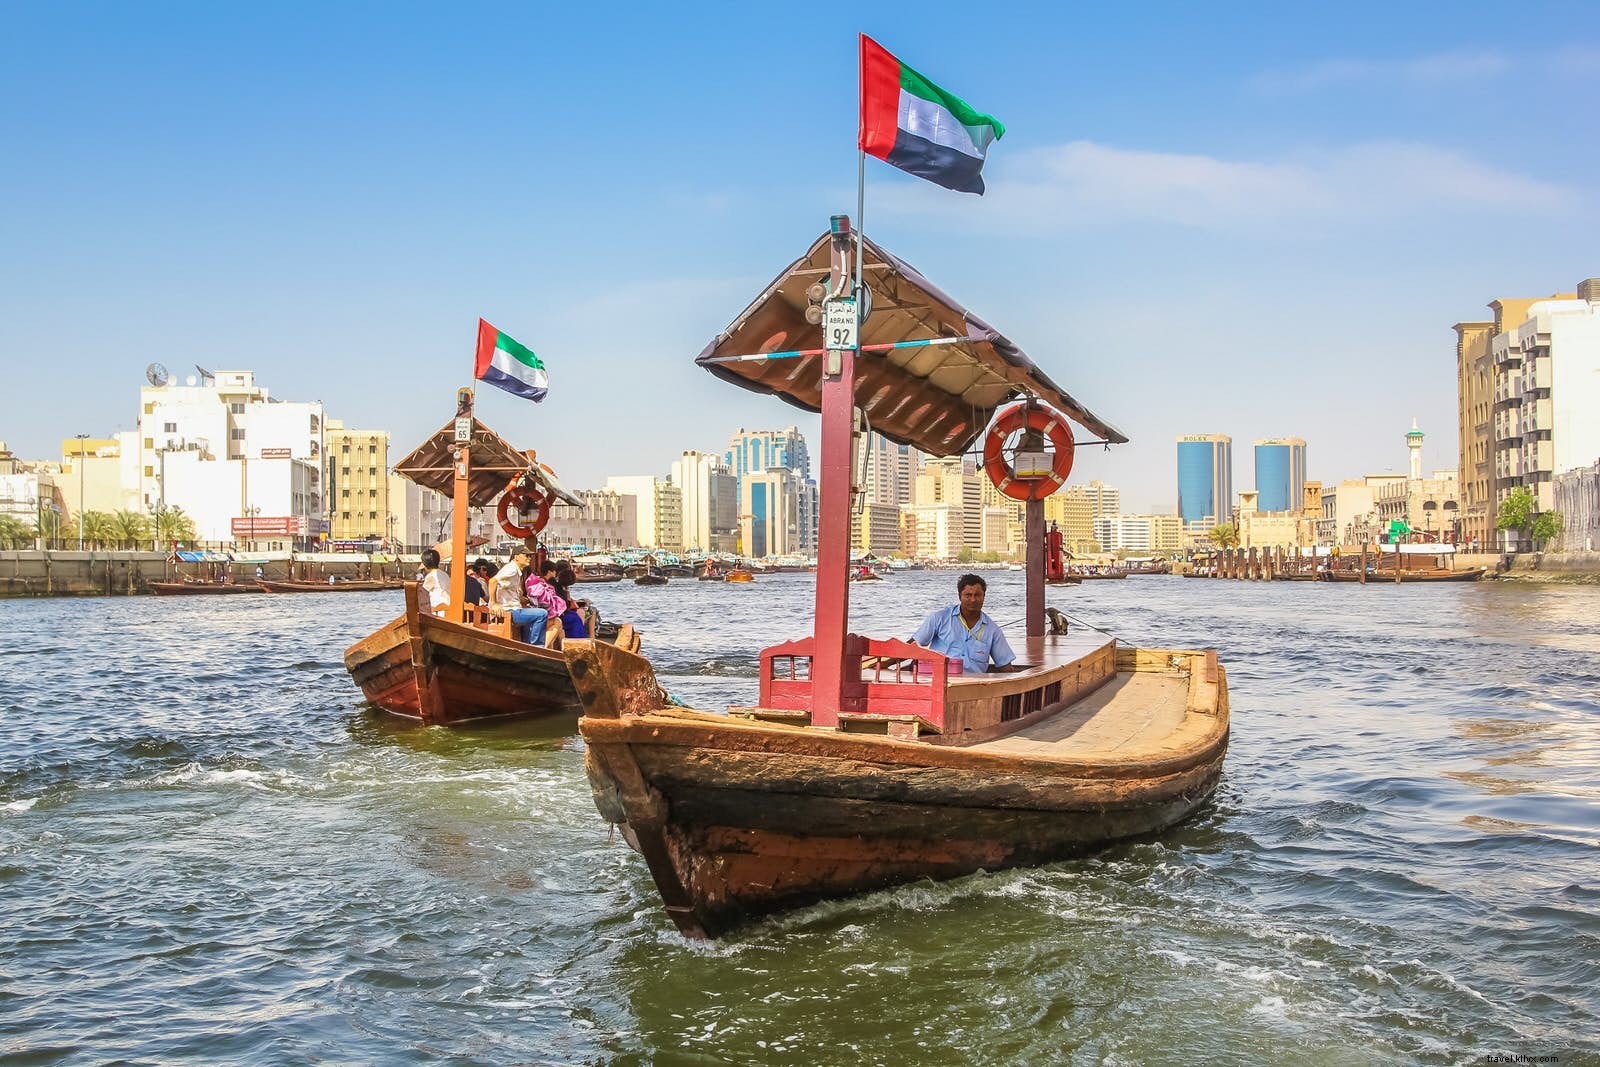 I 10 migliori hotspot di Instagram a Dubai 